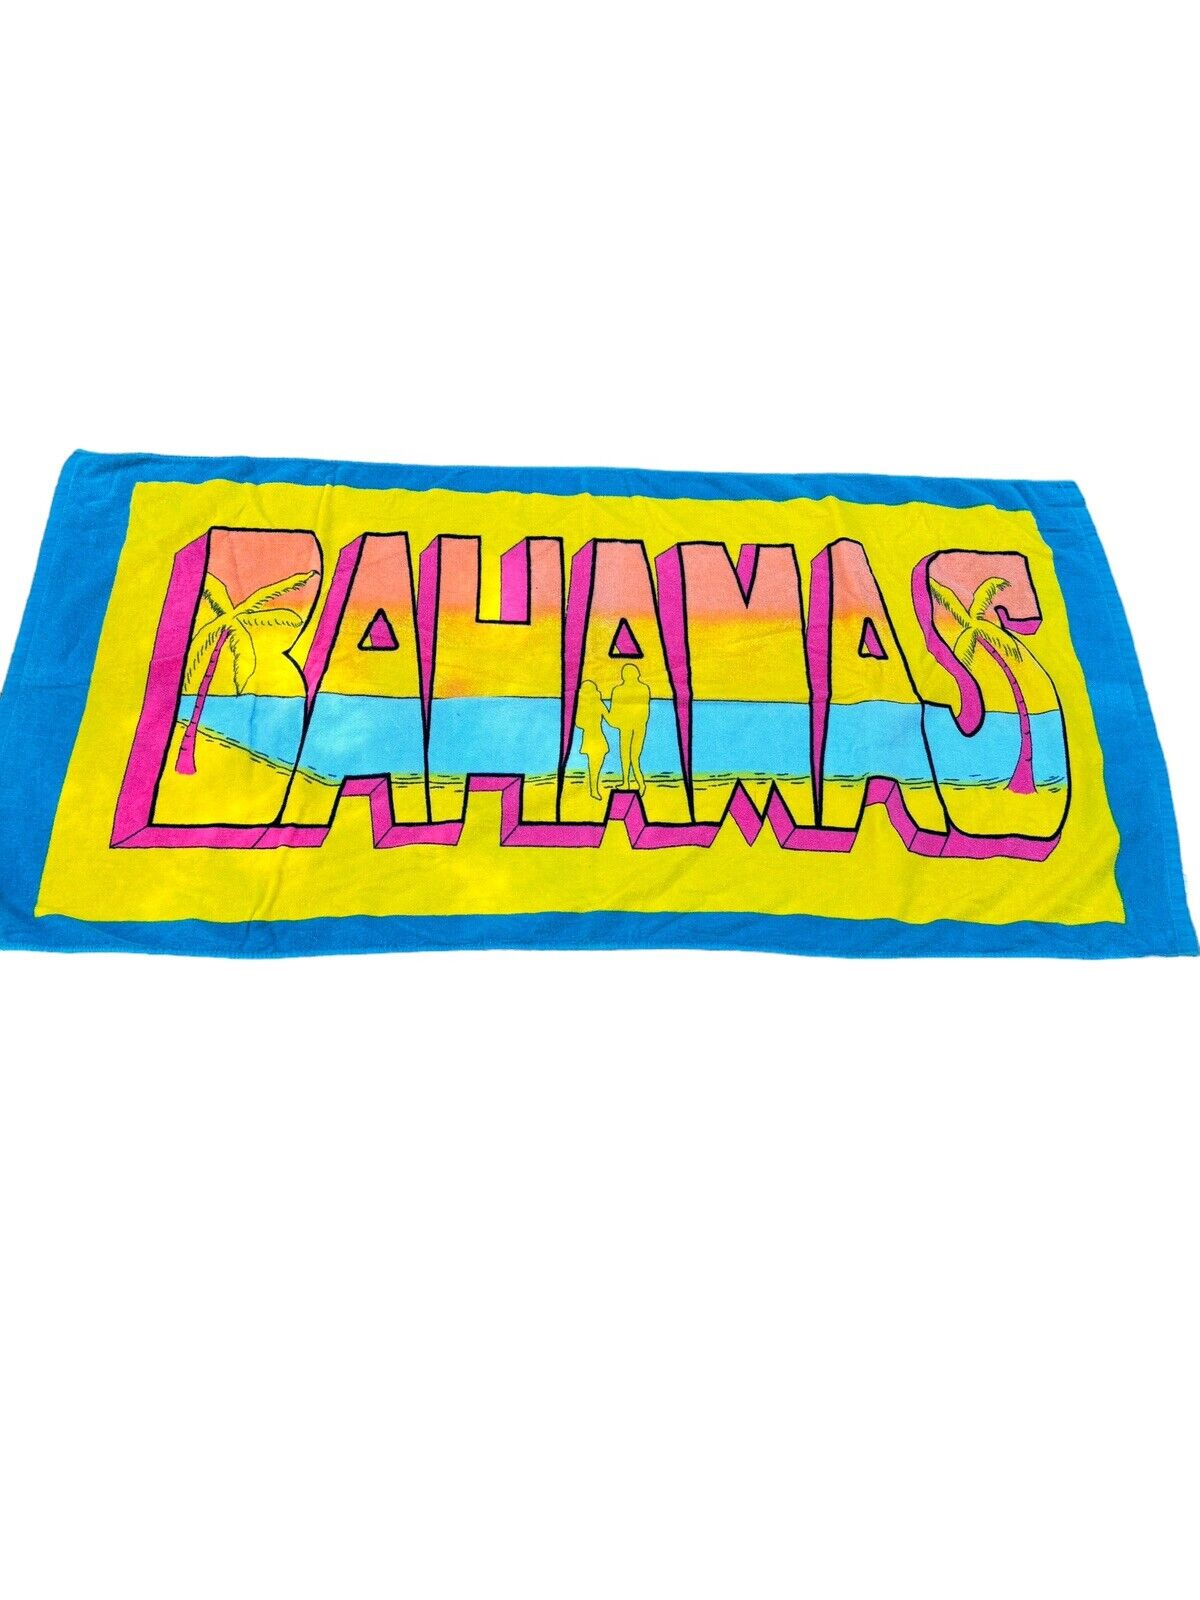 Vintage Bahamas Beach Towel Large Colorful Souvenir Towel Cotton 80s 90\'s Taiwan